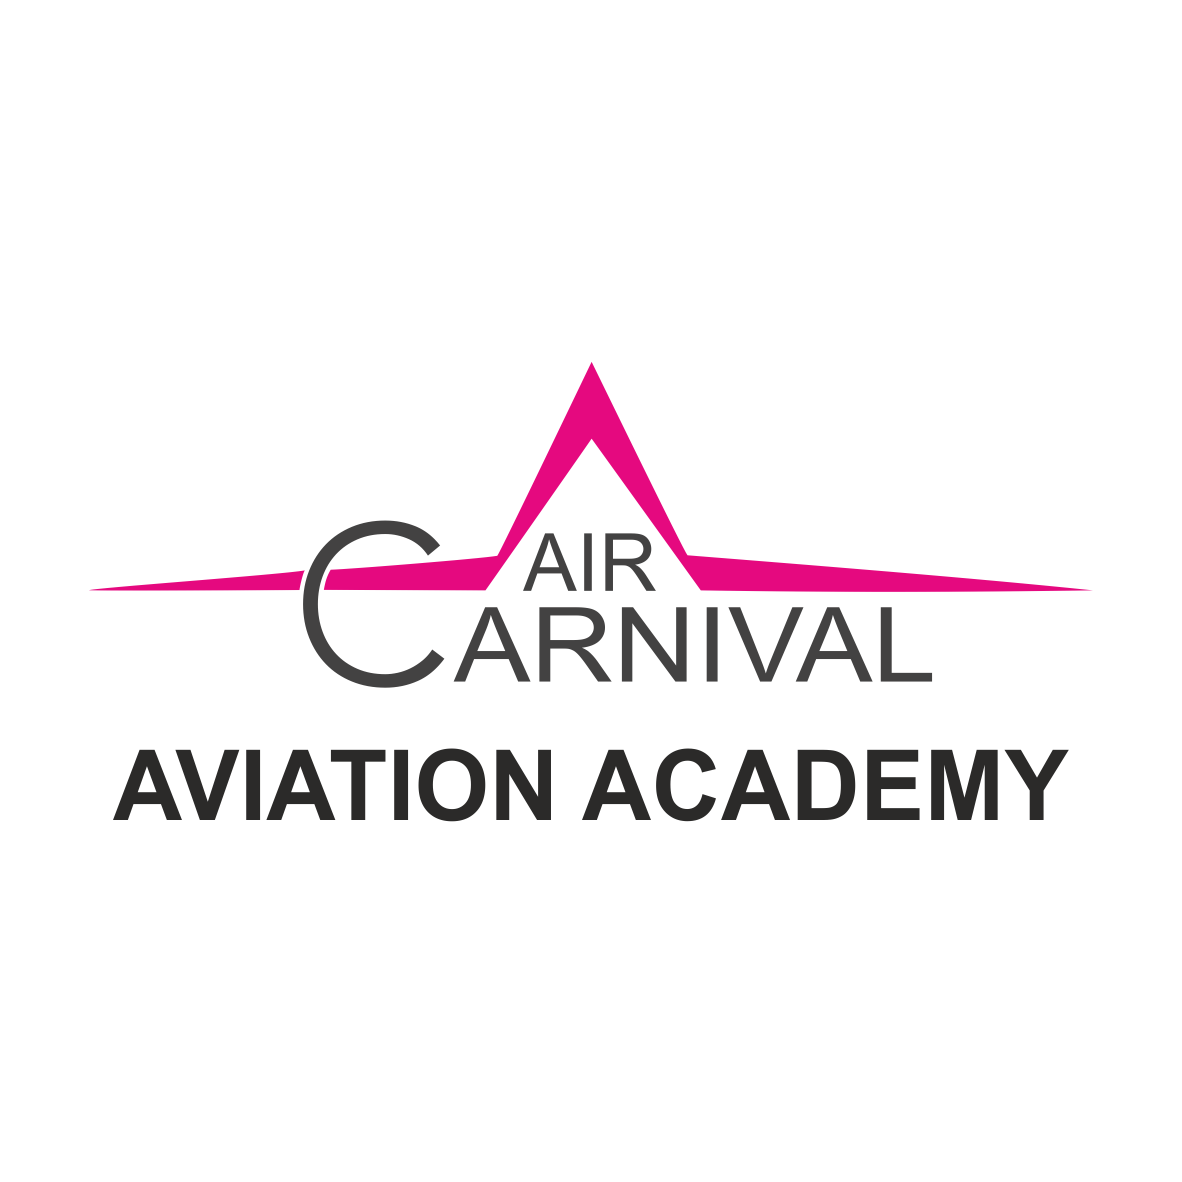 Air Carnival Aviation Academy